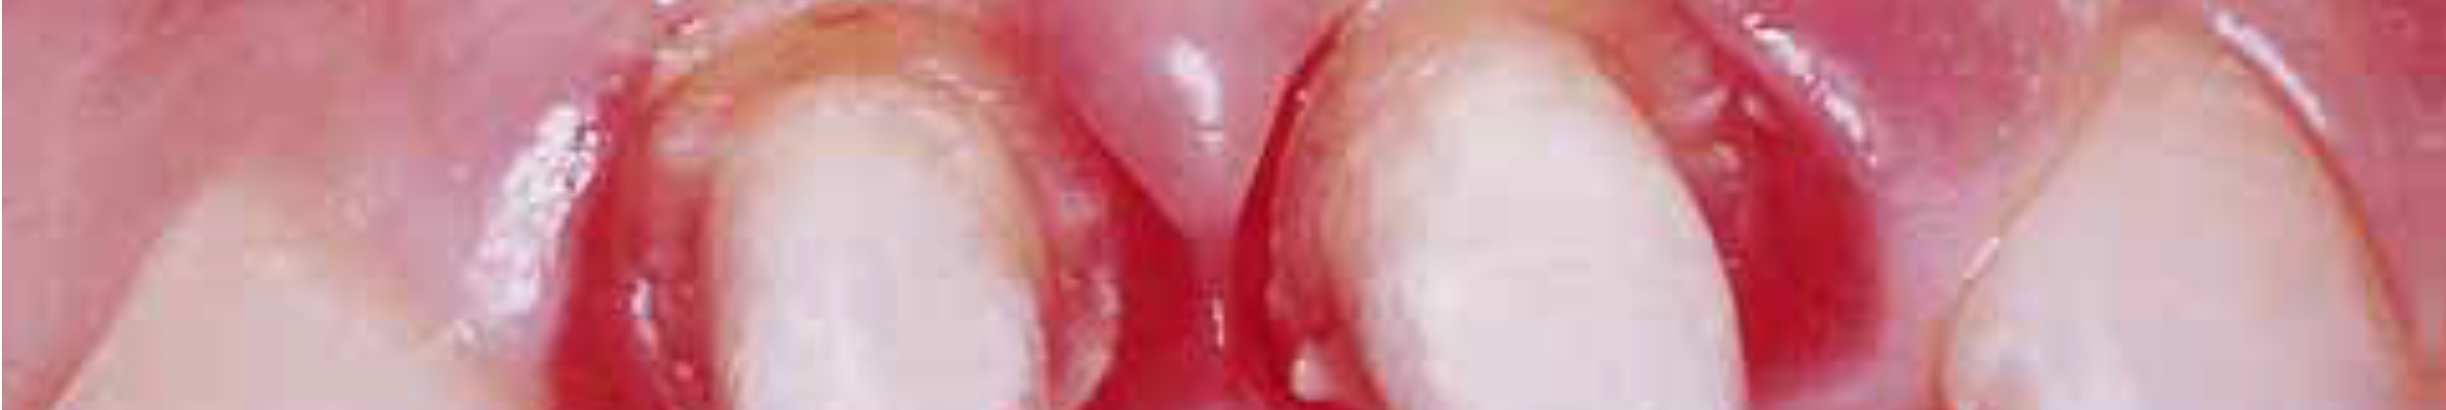 Las líneas de terminación cervical tienen una ubicación muy profunda en proximal, donde las preparaciones fallaron al no seguir la forma de los tejidos blandos ni la cresta alveolar subyacente.